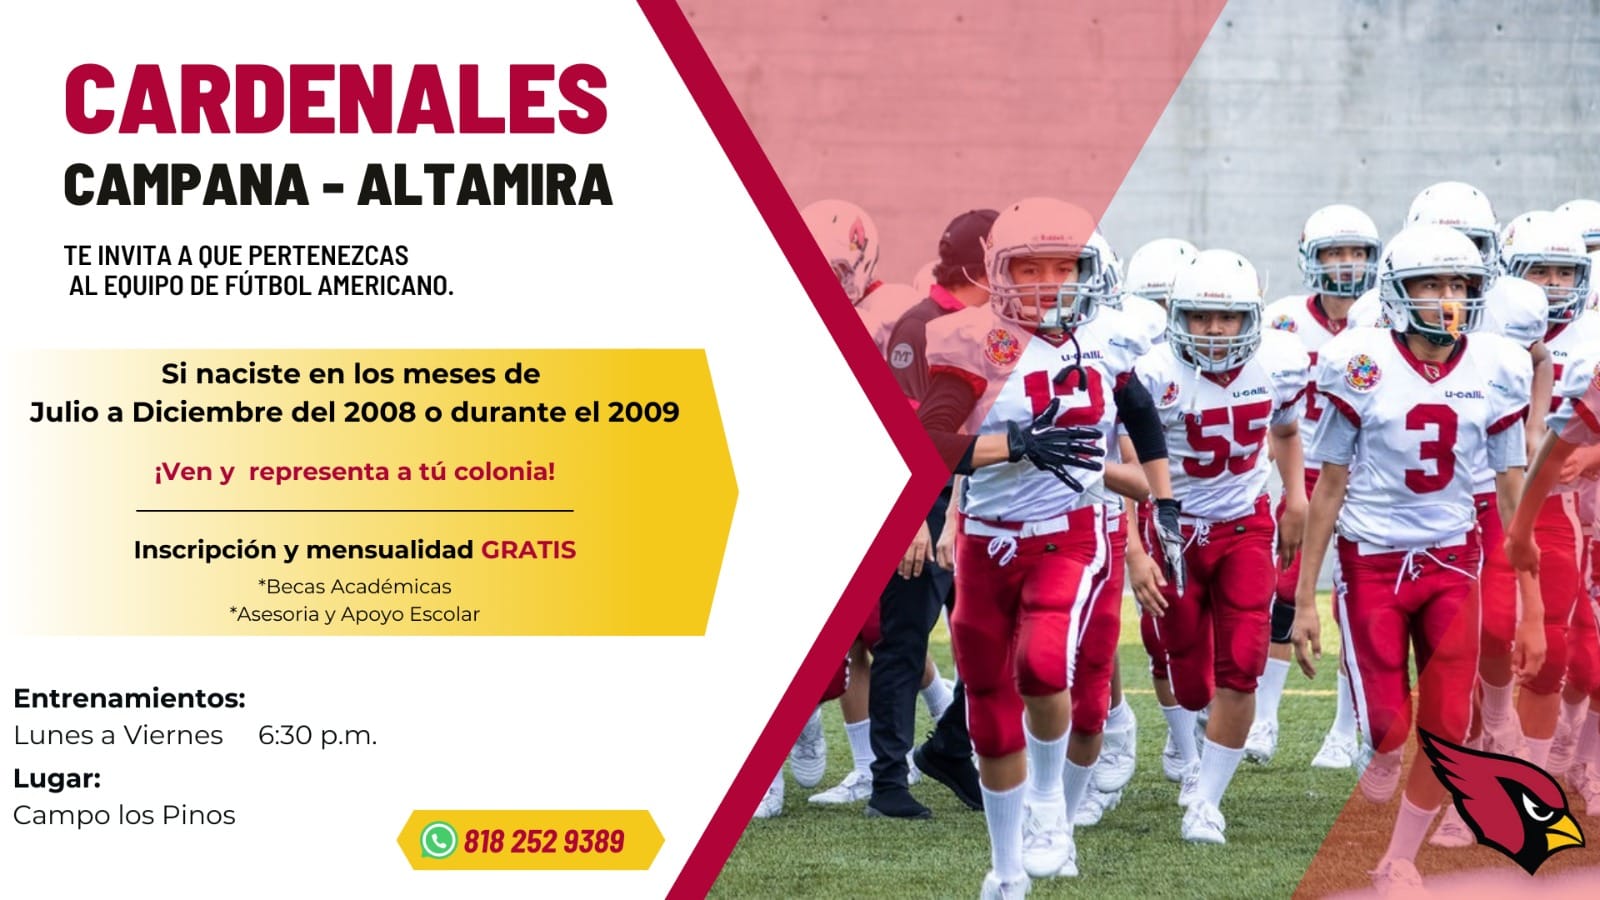 Campana – Altamira: Cardenales te invita a ser parte del equipo de fútbol americano